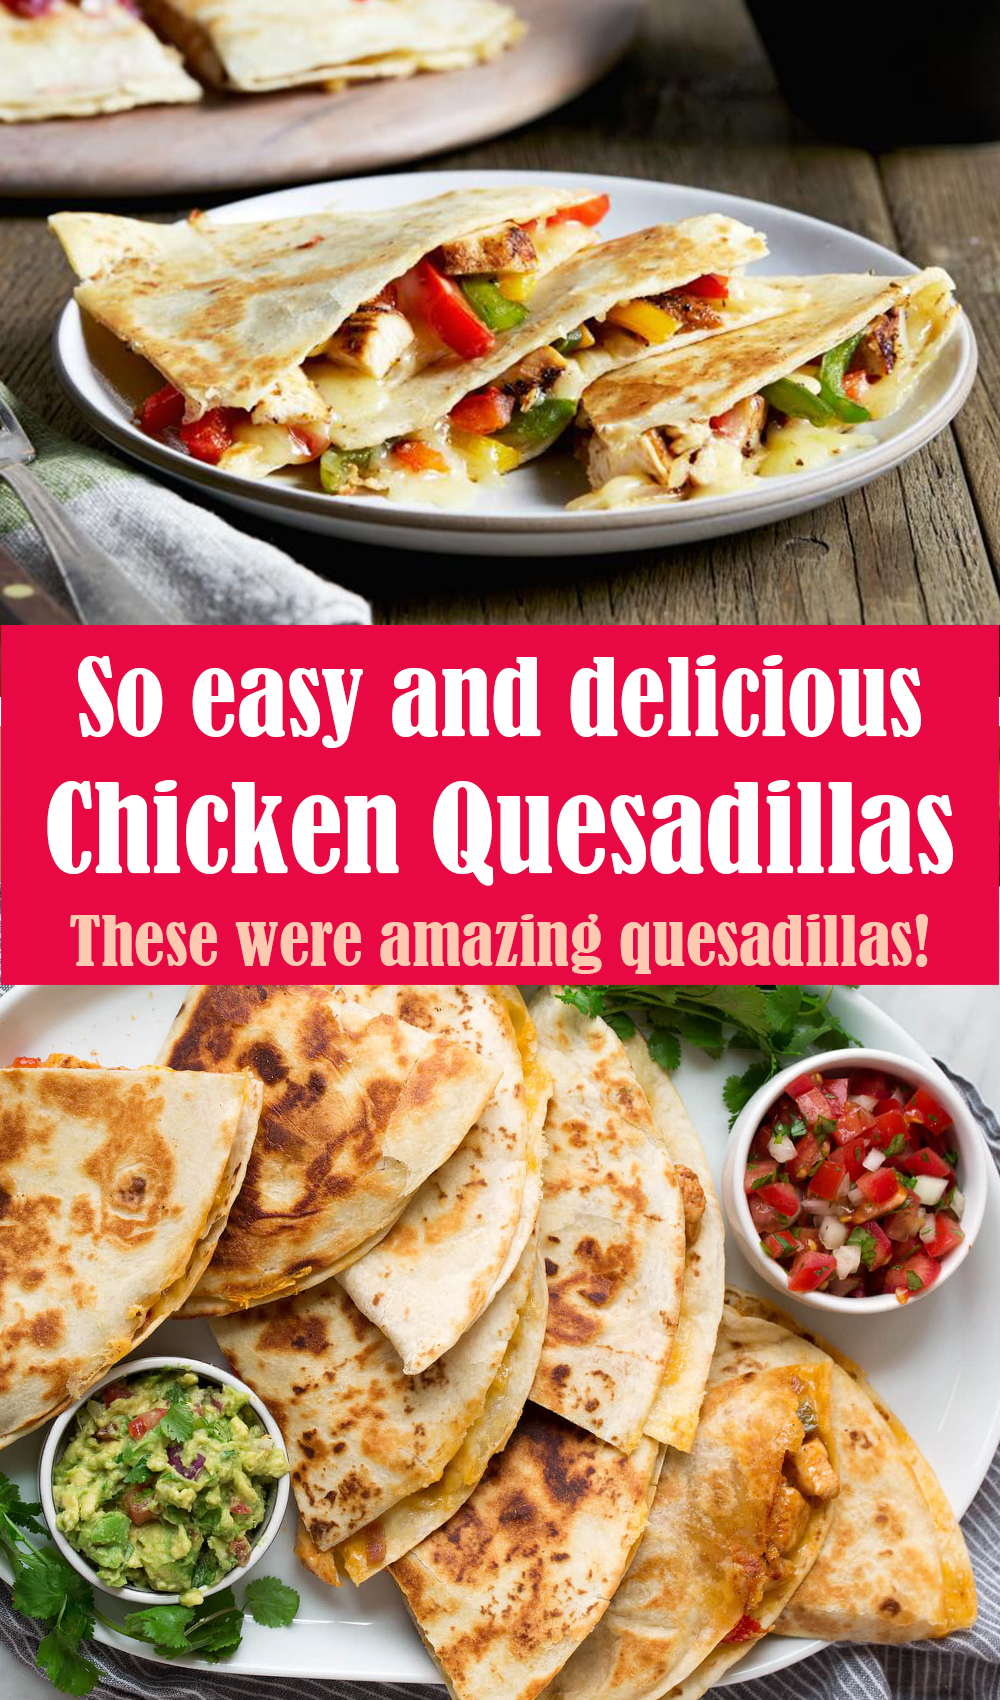 Easy Chicken Quesadillas